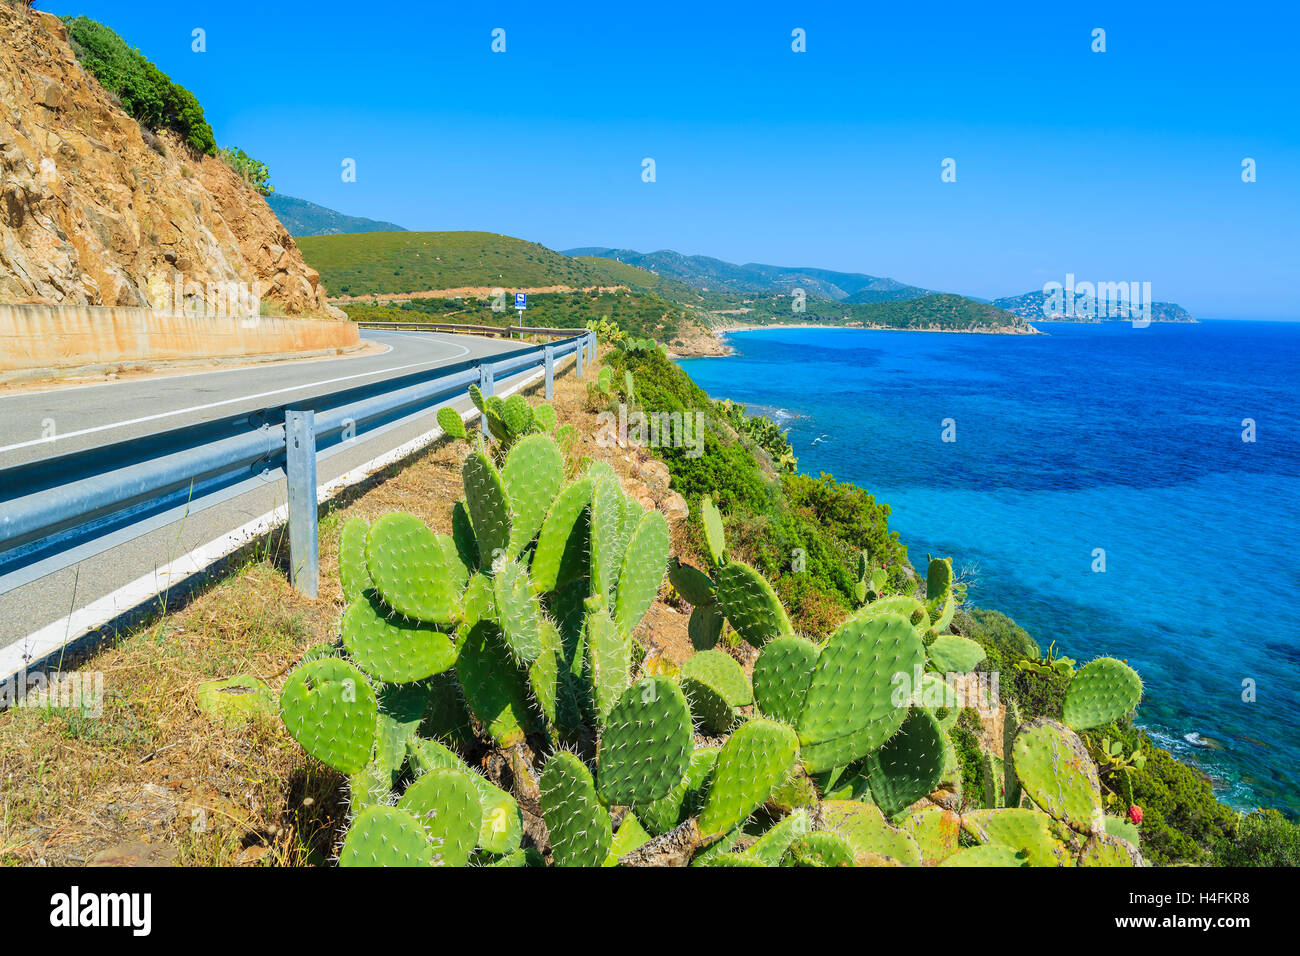 Pintoresca carretera costera con cactus y plantas vista mar azul cerca de Porto sa Ruxi, Cerdeña, Italia Foto de stock